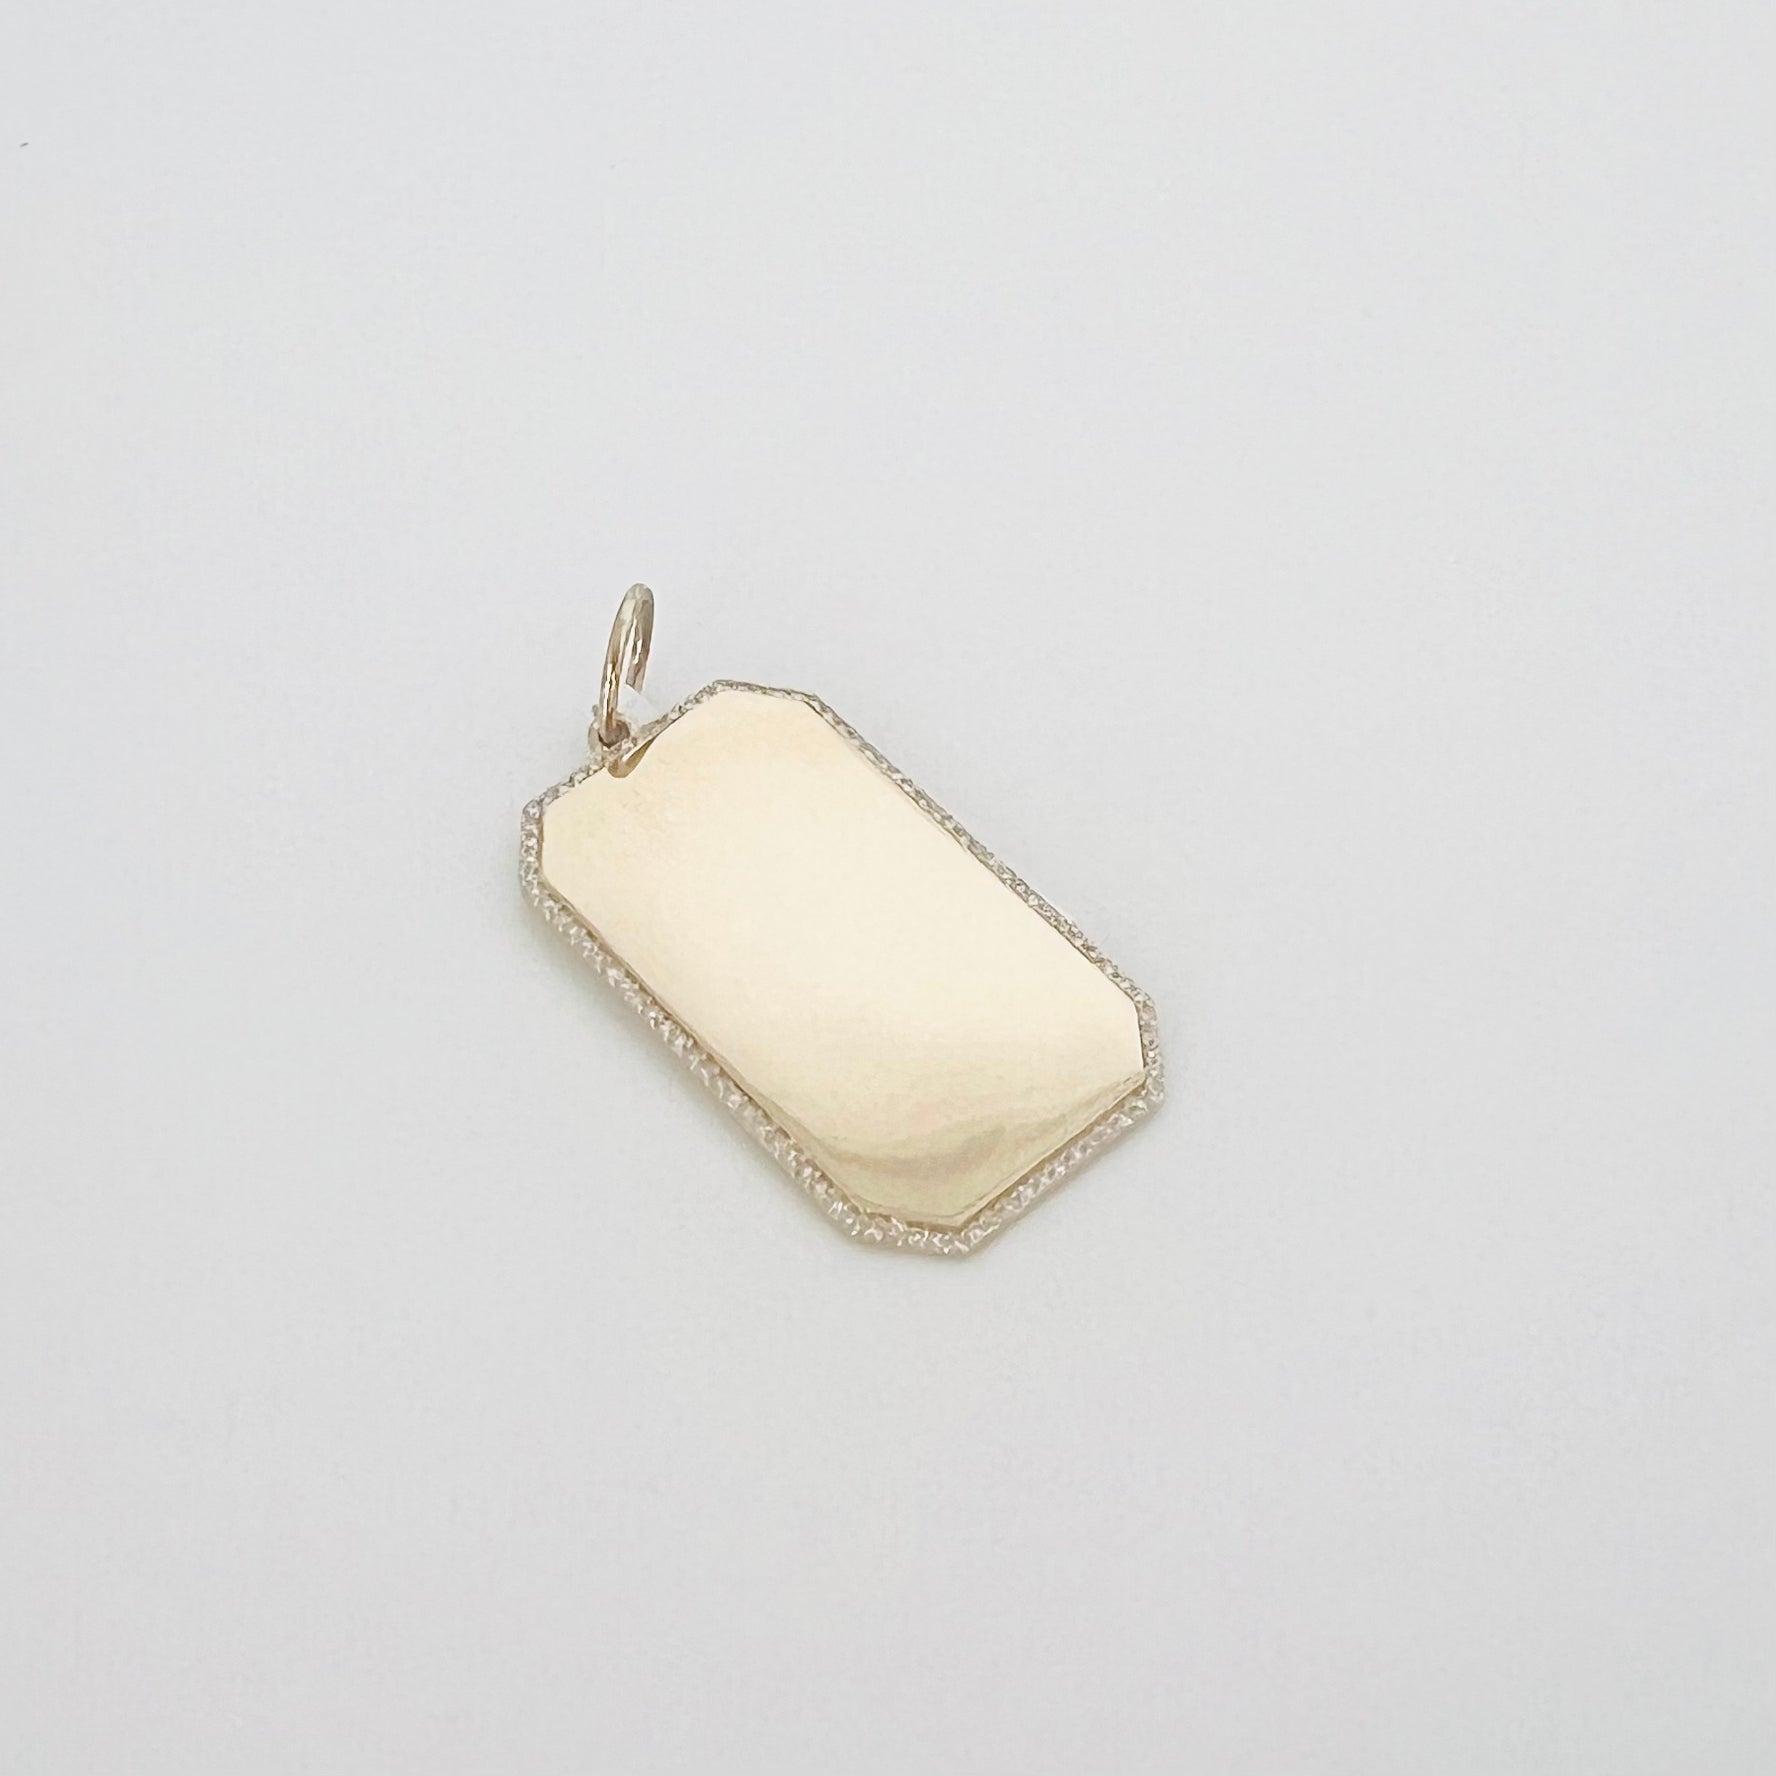 14k gold and diamond halo dog tag pendant